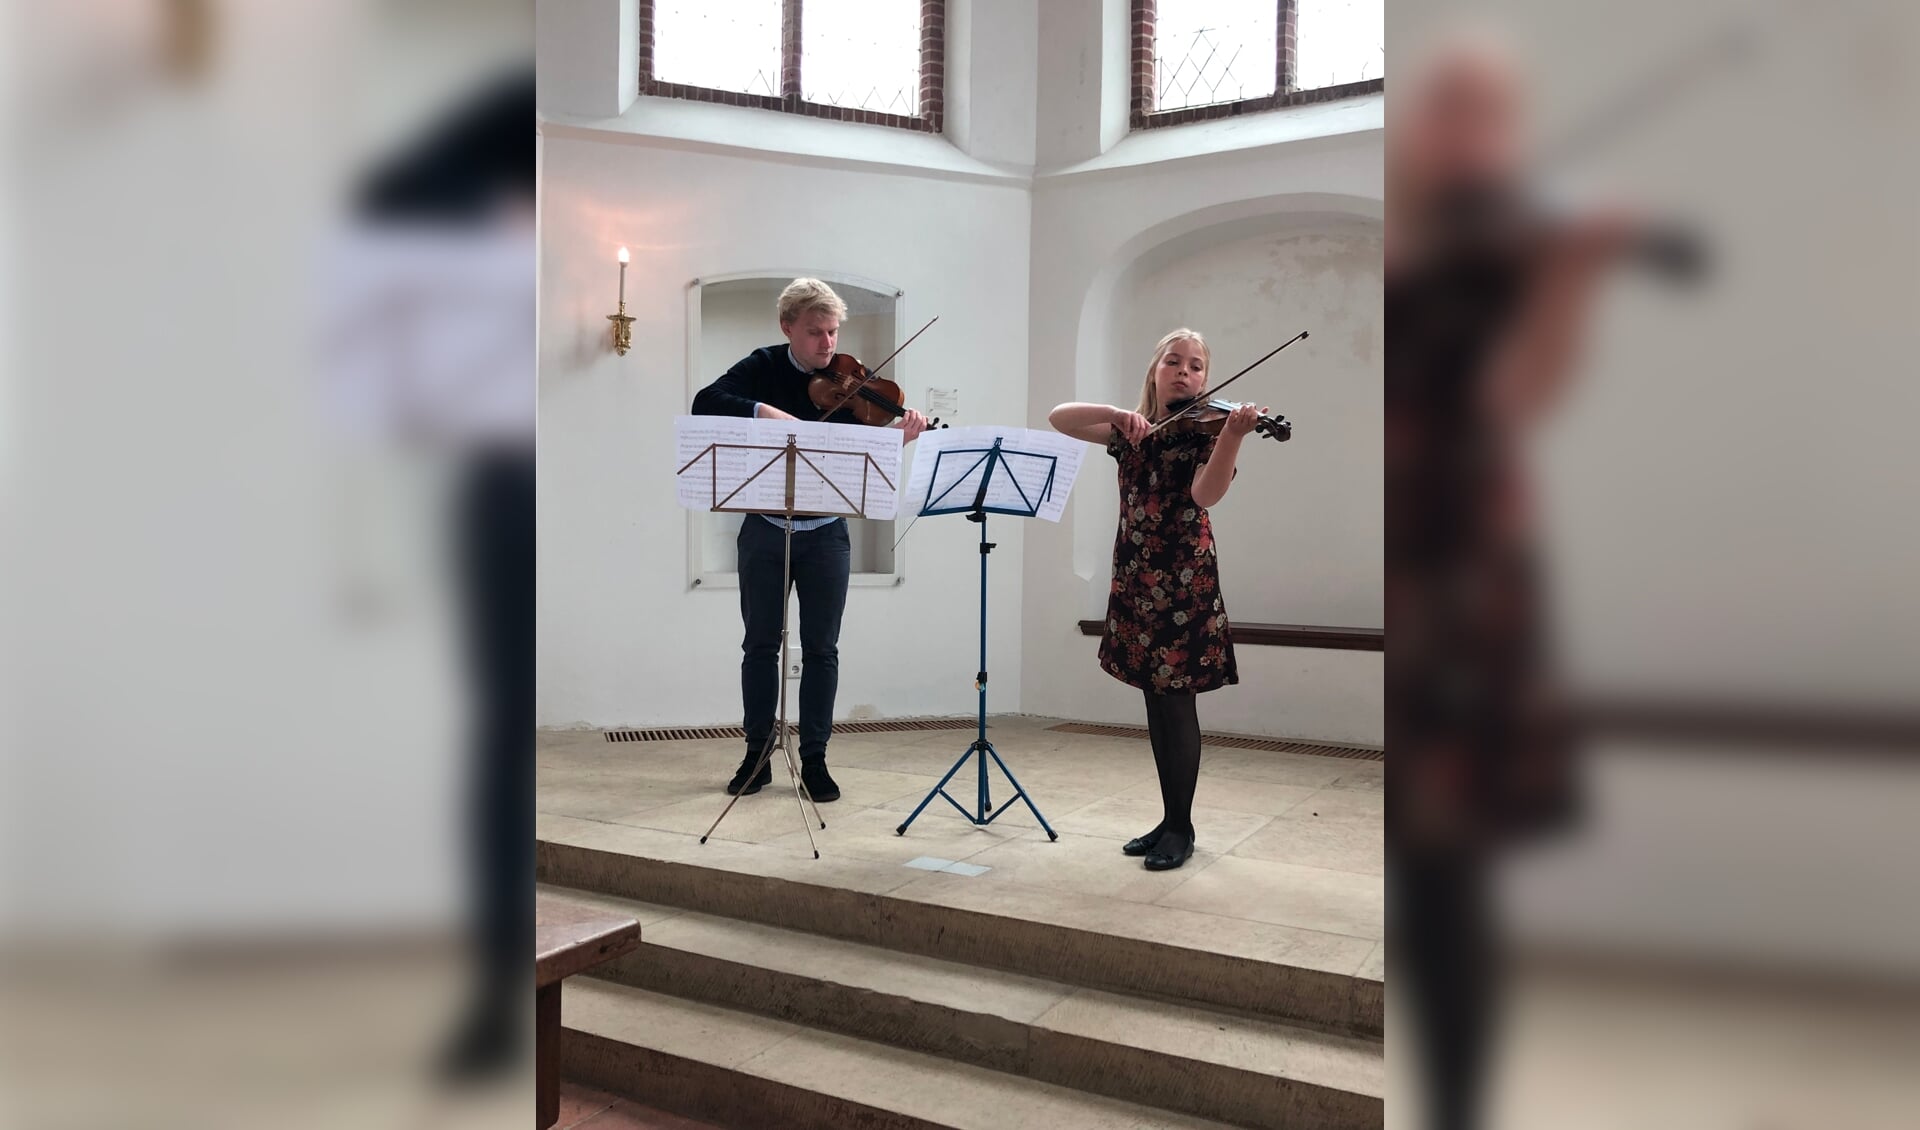 Vioolleraar Kilian van Rooij en Isabel Bottenheft zijn hard aan het oefenen voor de muziekwedstrijd.